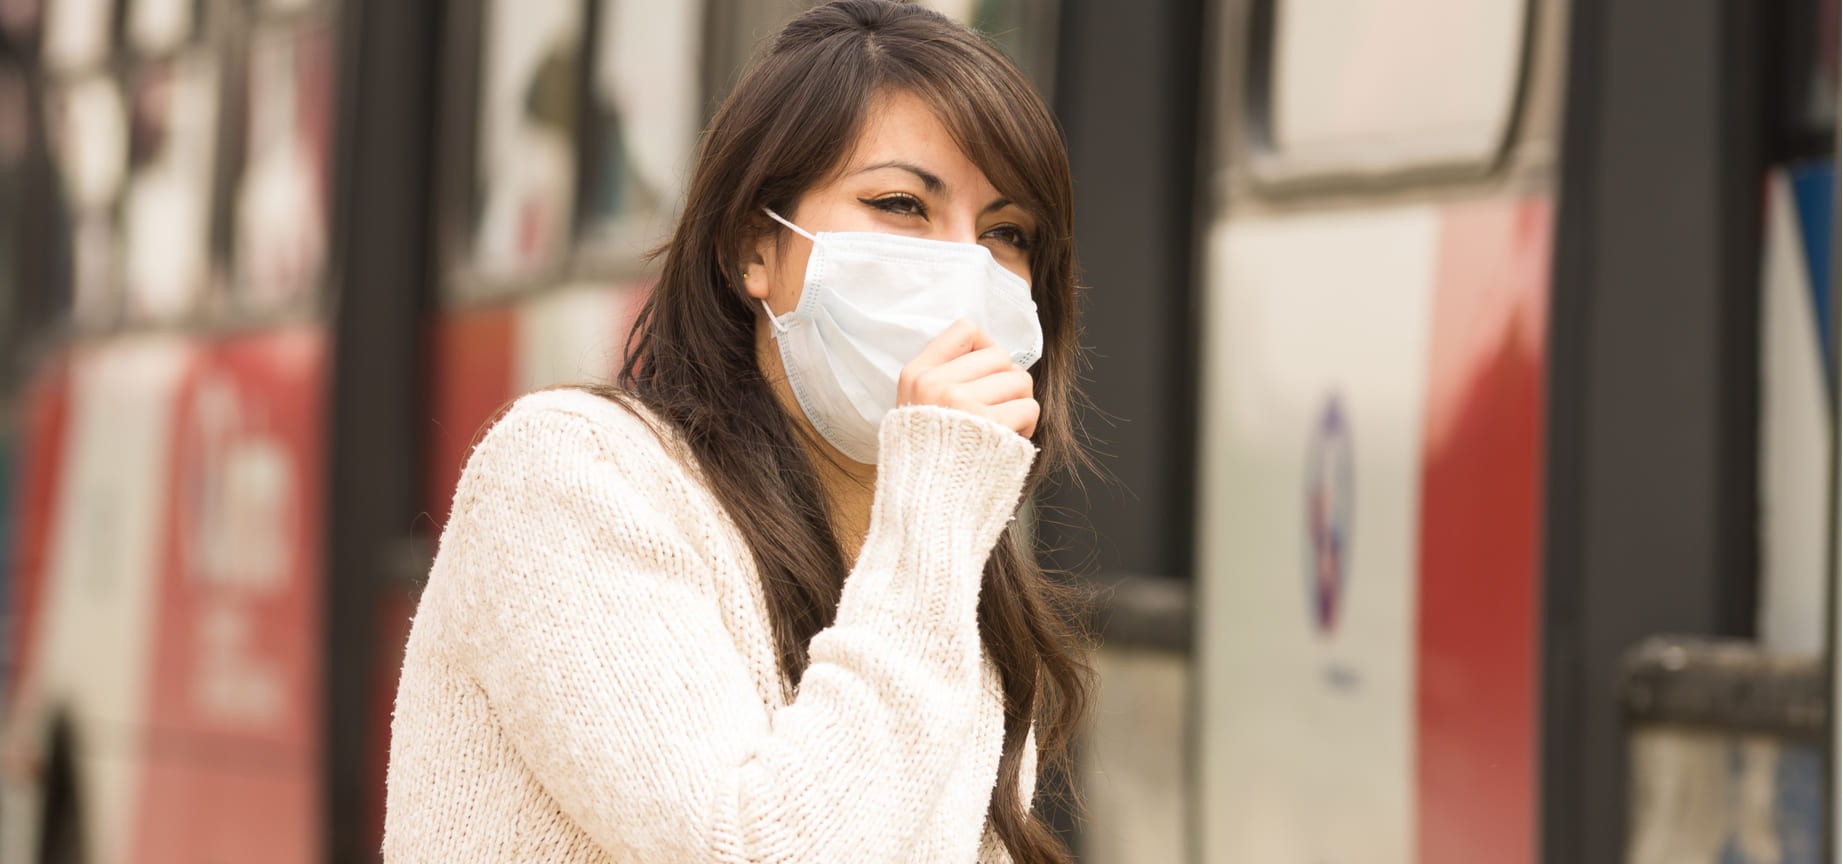 Respirar durante dos horas el aire contaminado elevaría el riesgo cardiovascular